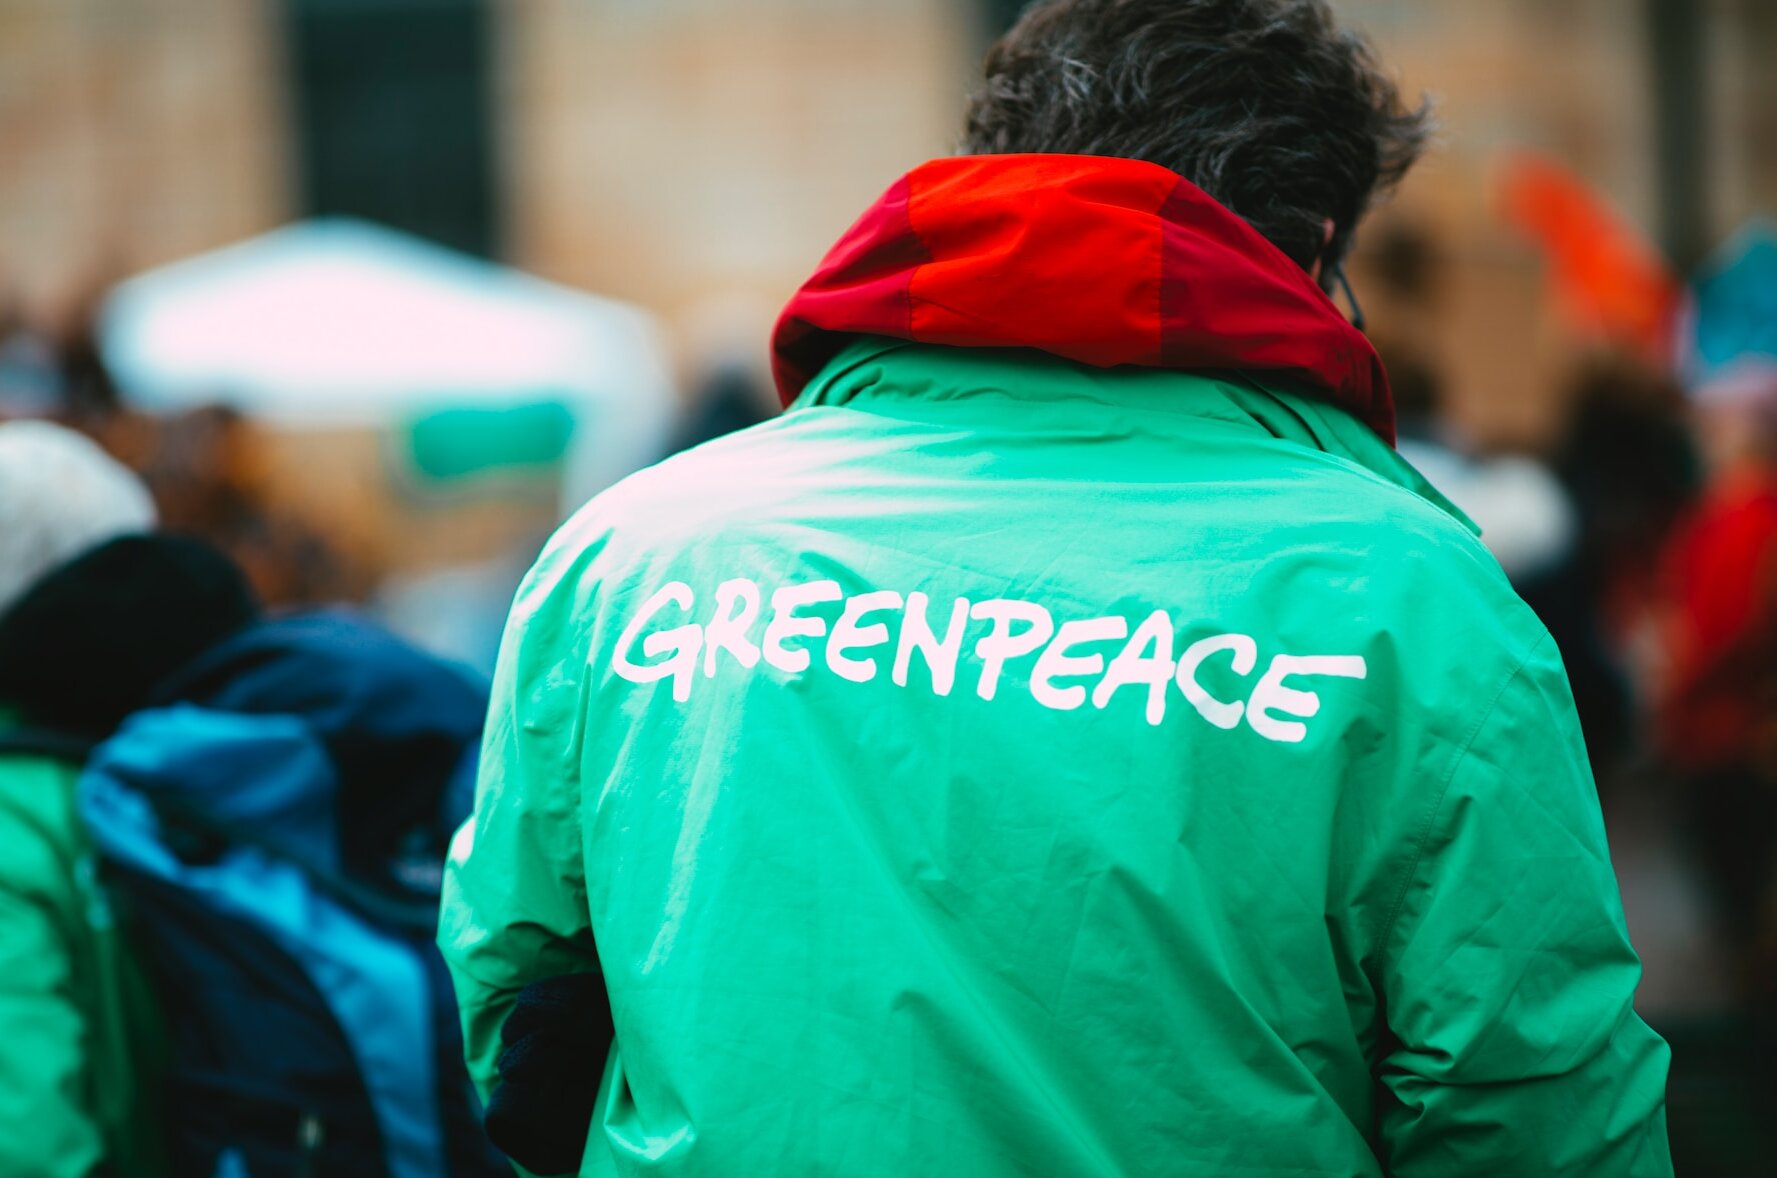 Ein Mann von hinten, auf dessen grüner Jacke "Greenpeace" steht